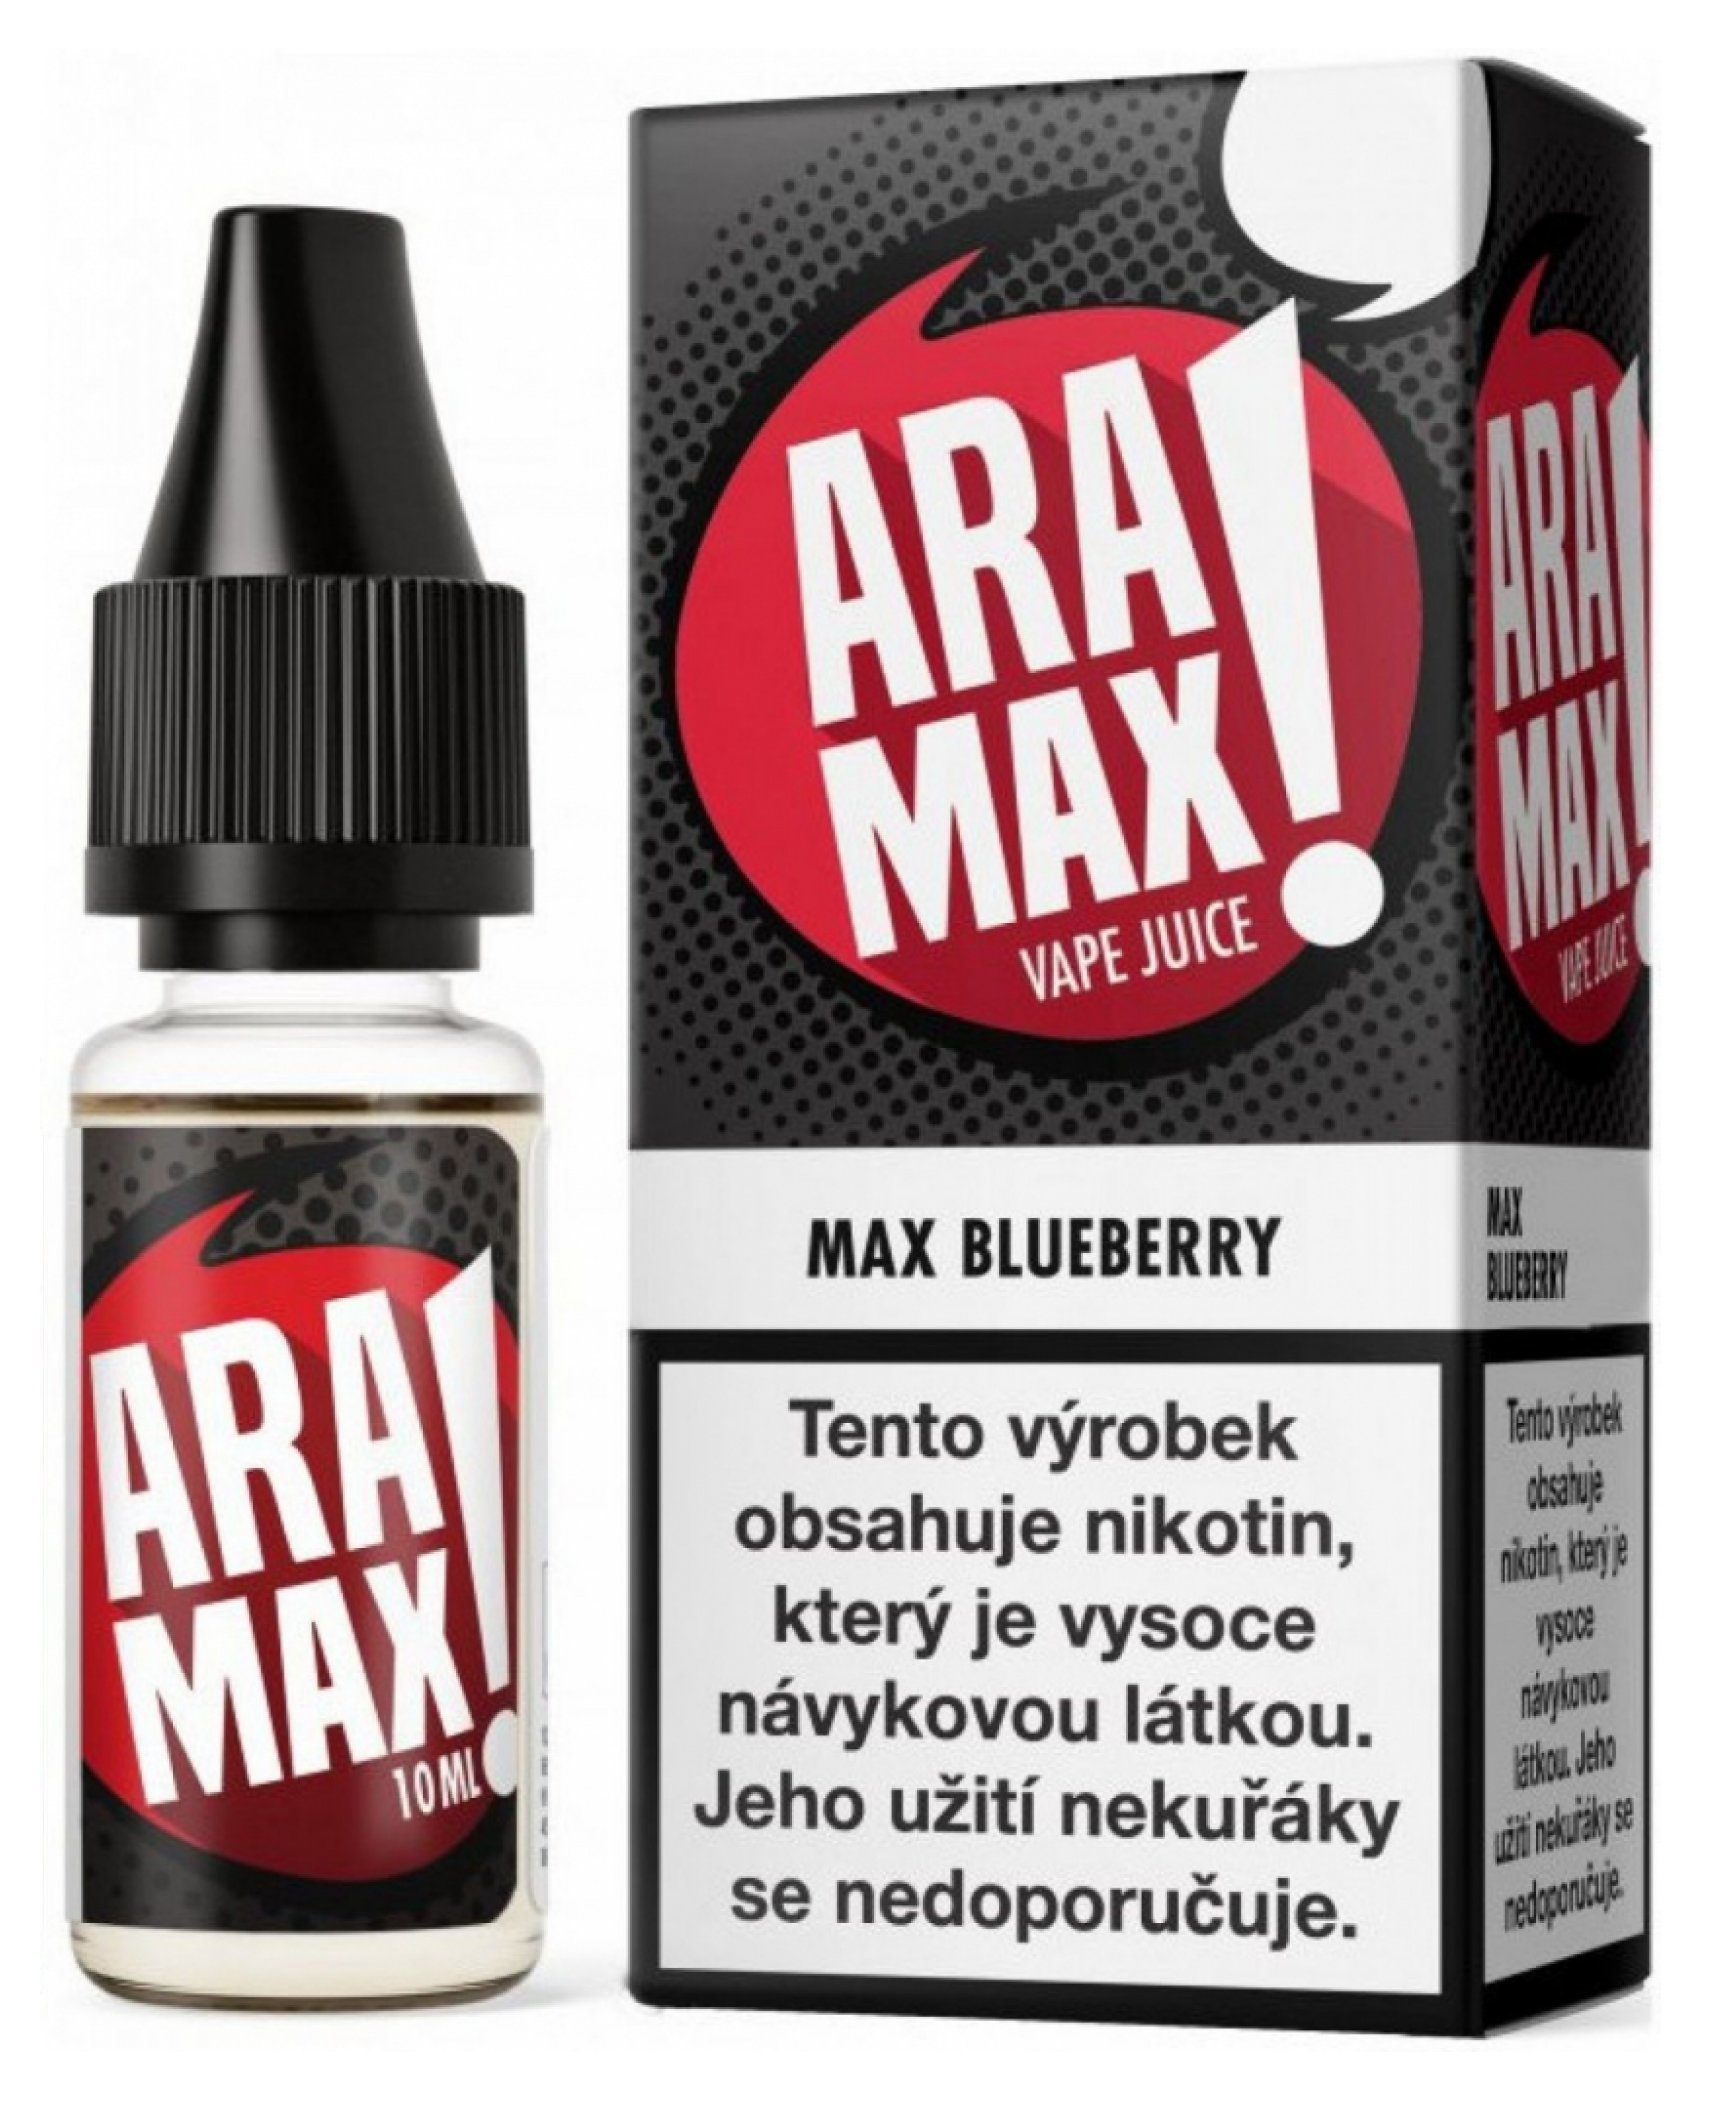 ARAMAX Max Blueberry 10ml Množství nikotinu: 3mg